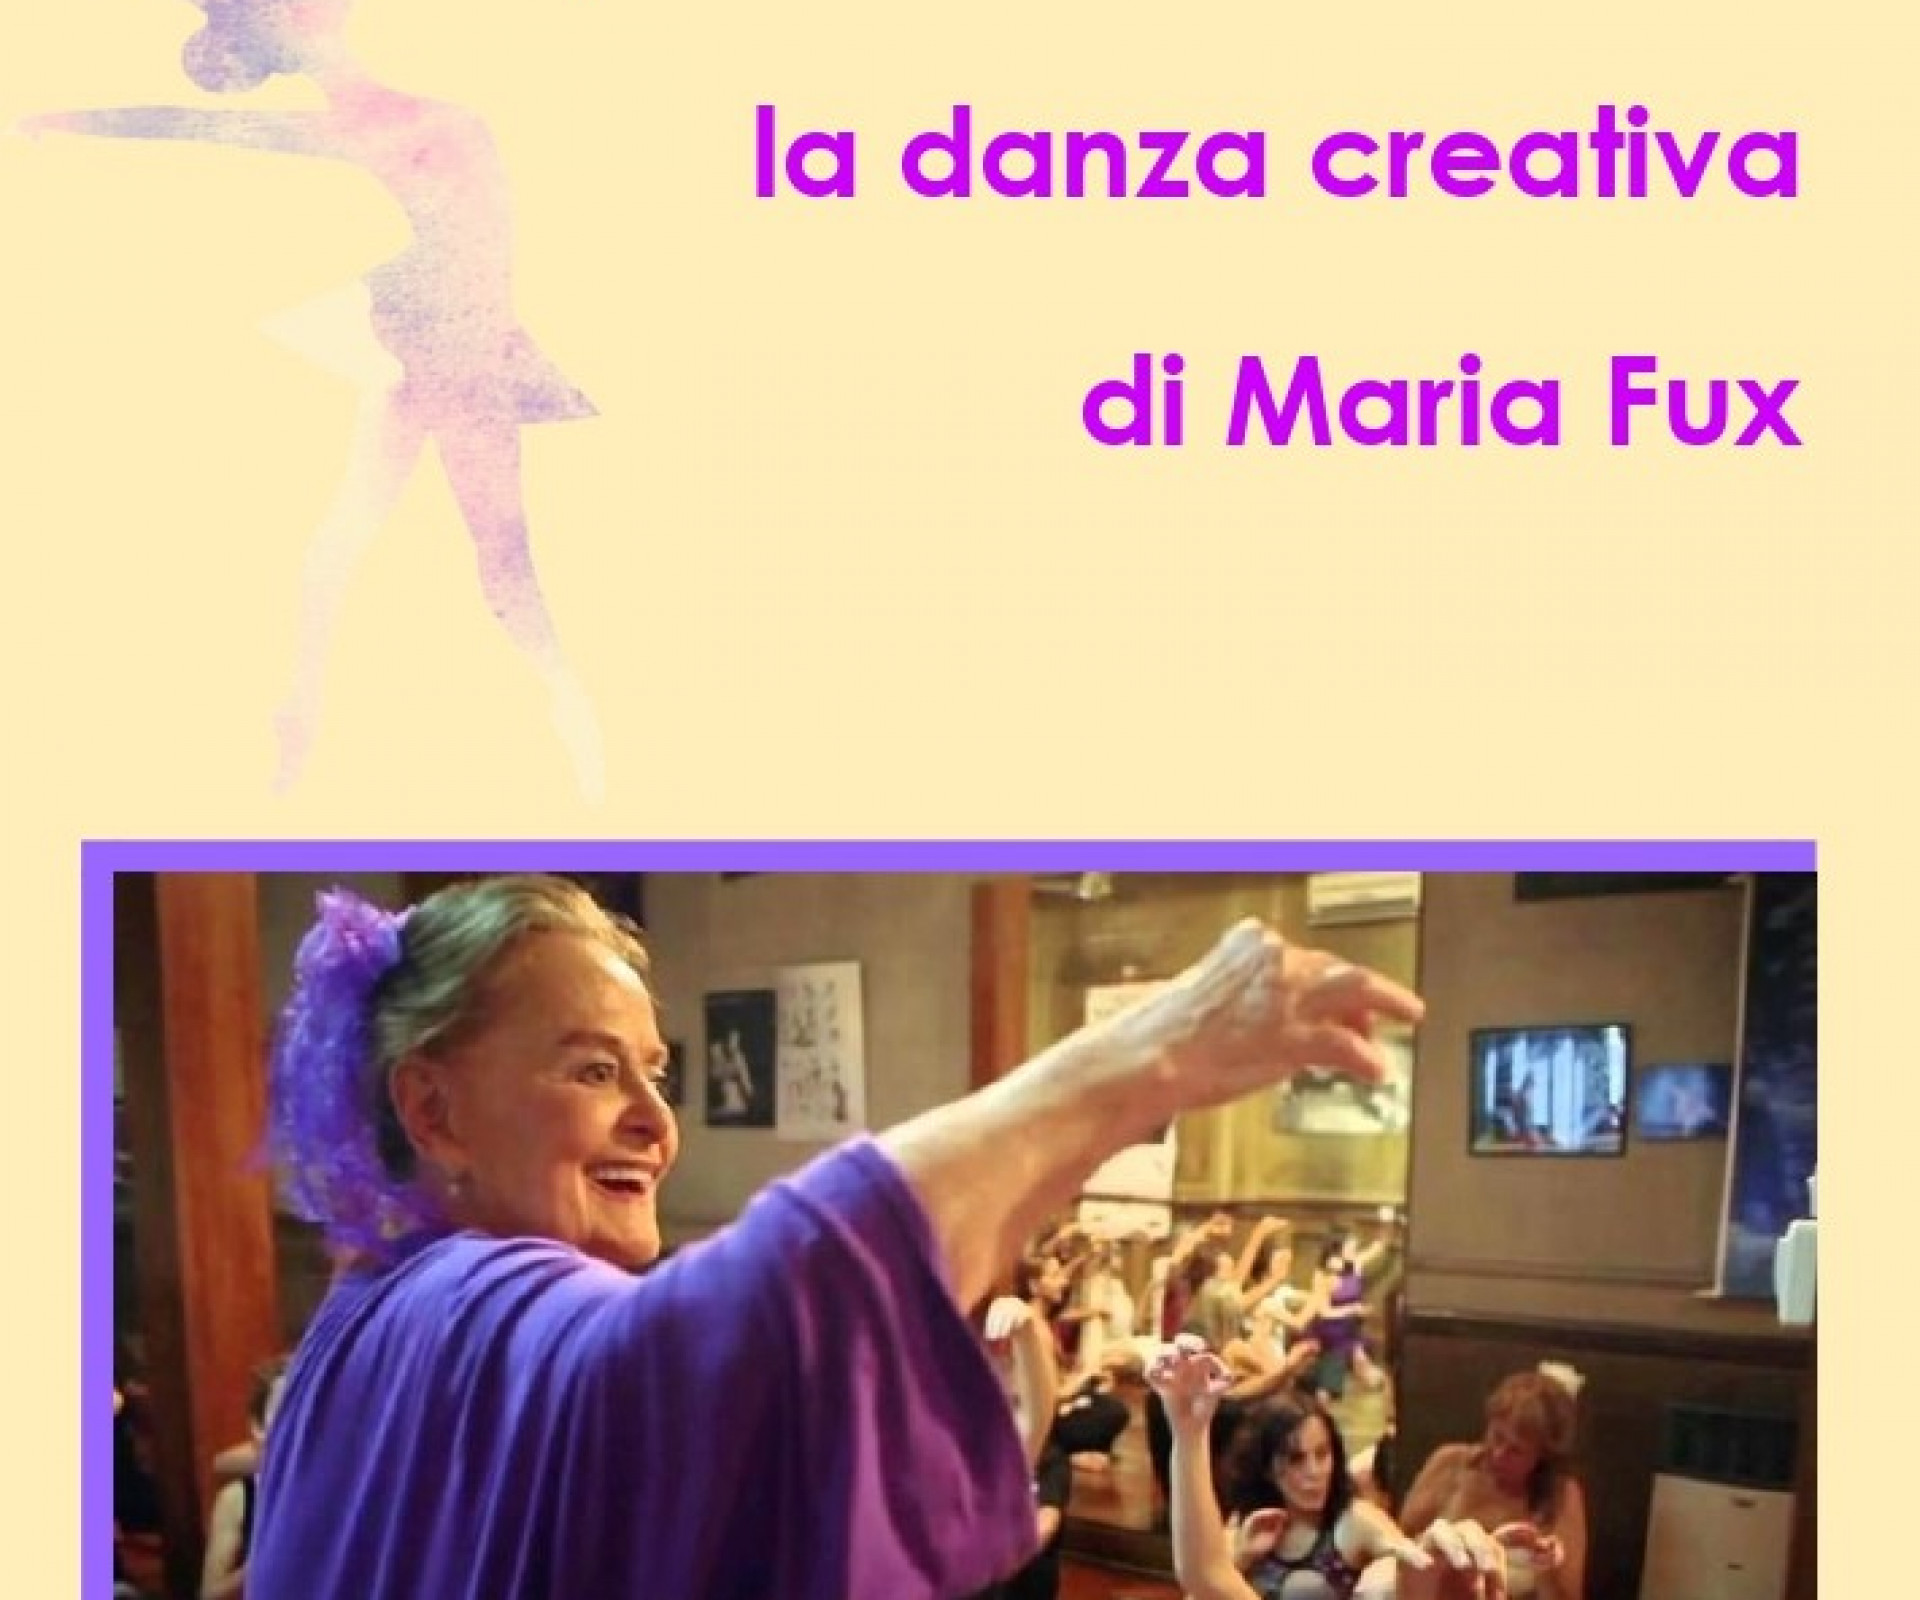 “Danzare la vita: la psicoanalisi incontra la danza creativa di Maria Fux” - sabato 8 ottobre -